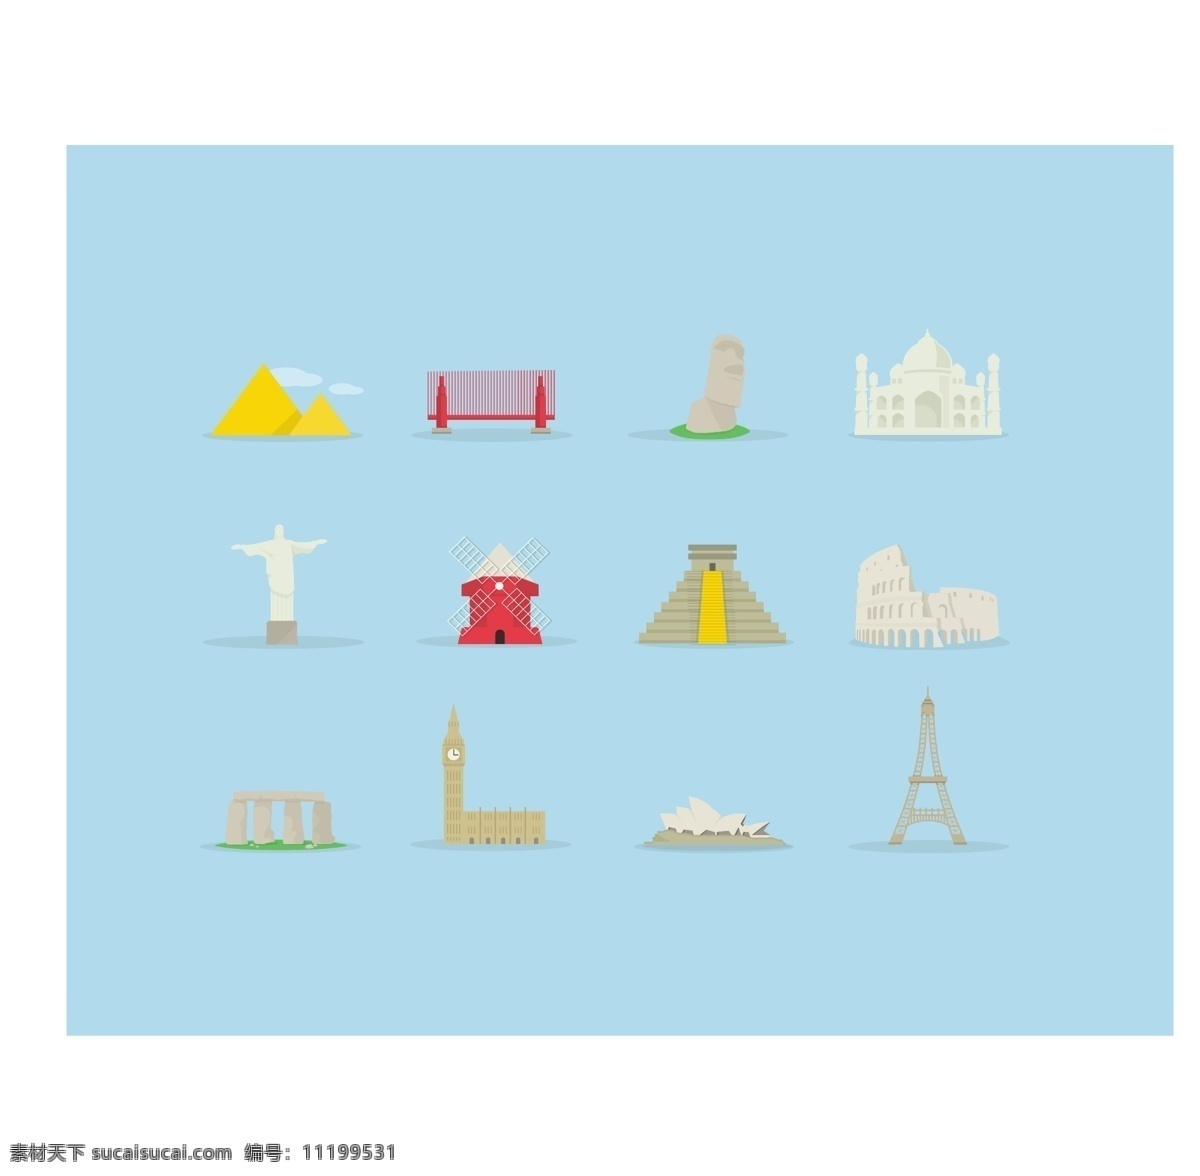 精致 旅游名胜 图标 矢量 素材图片 巴黎铁塔 金字塔 泰姬陵 悉尼歌剧院 复活岛石像